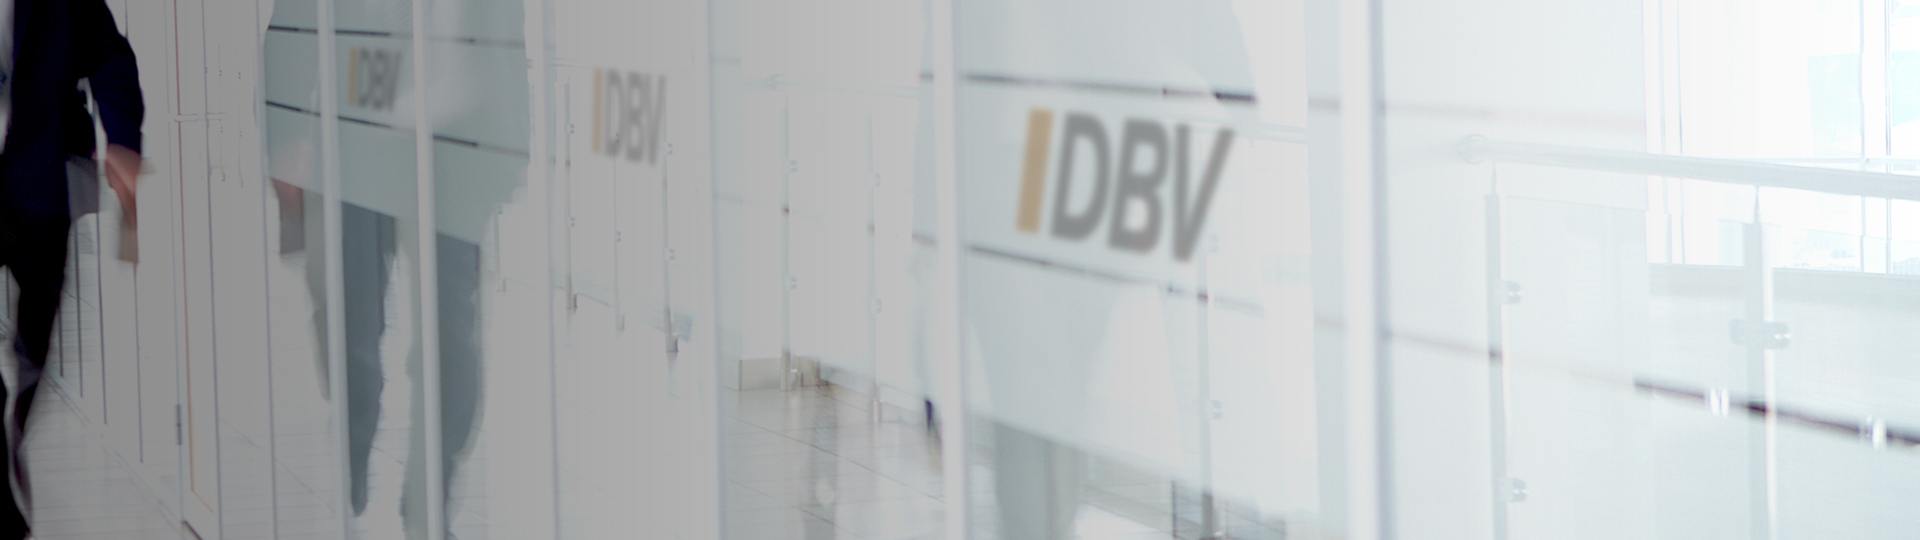 Private Krankenversicherung | DBV Nürnberg Matthias Auschra